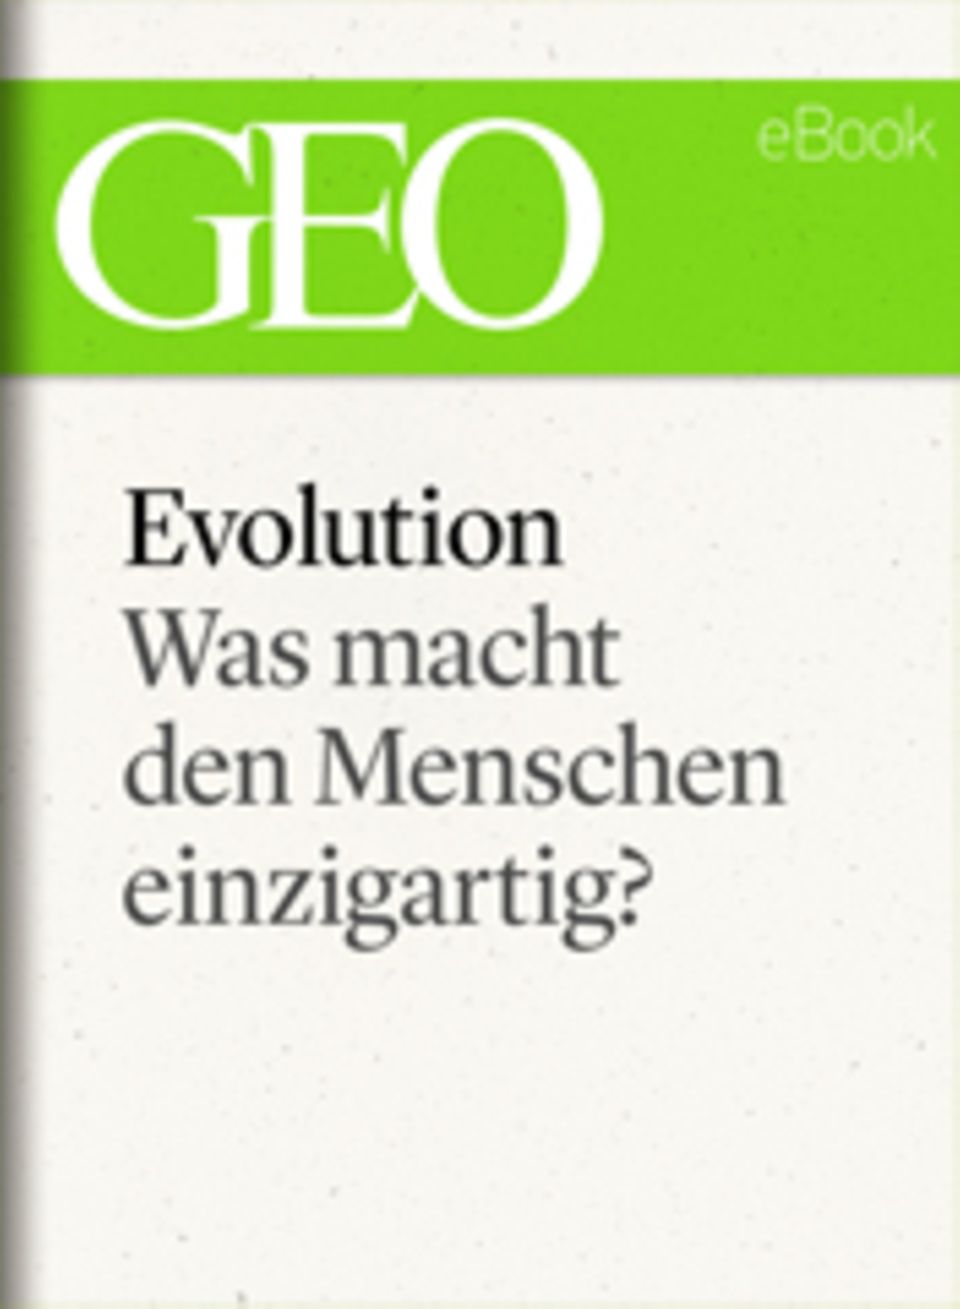 Was macht den Menschen einzigartig?: GEO eBook "Evolution"